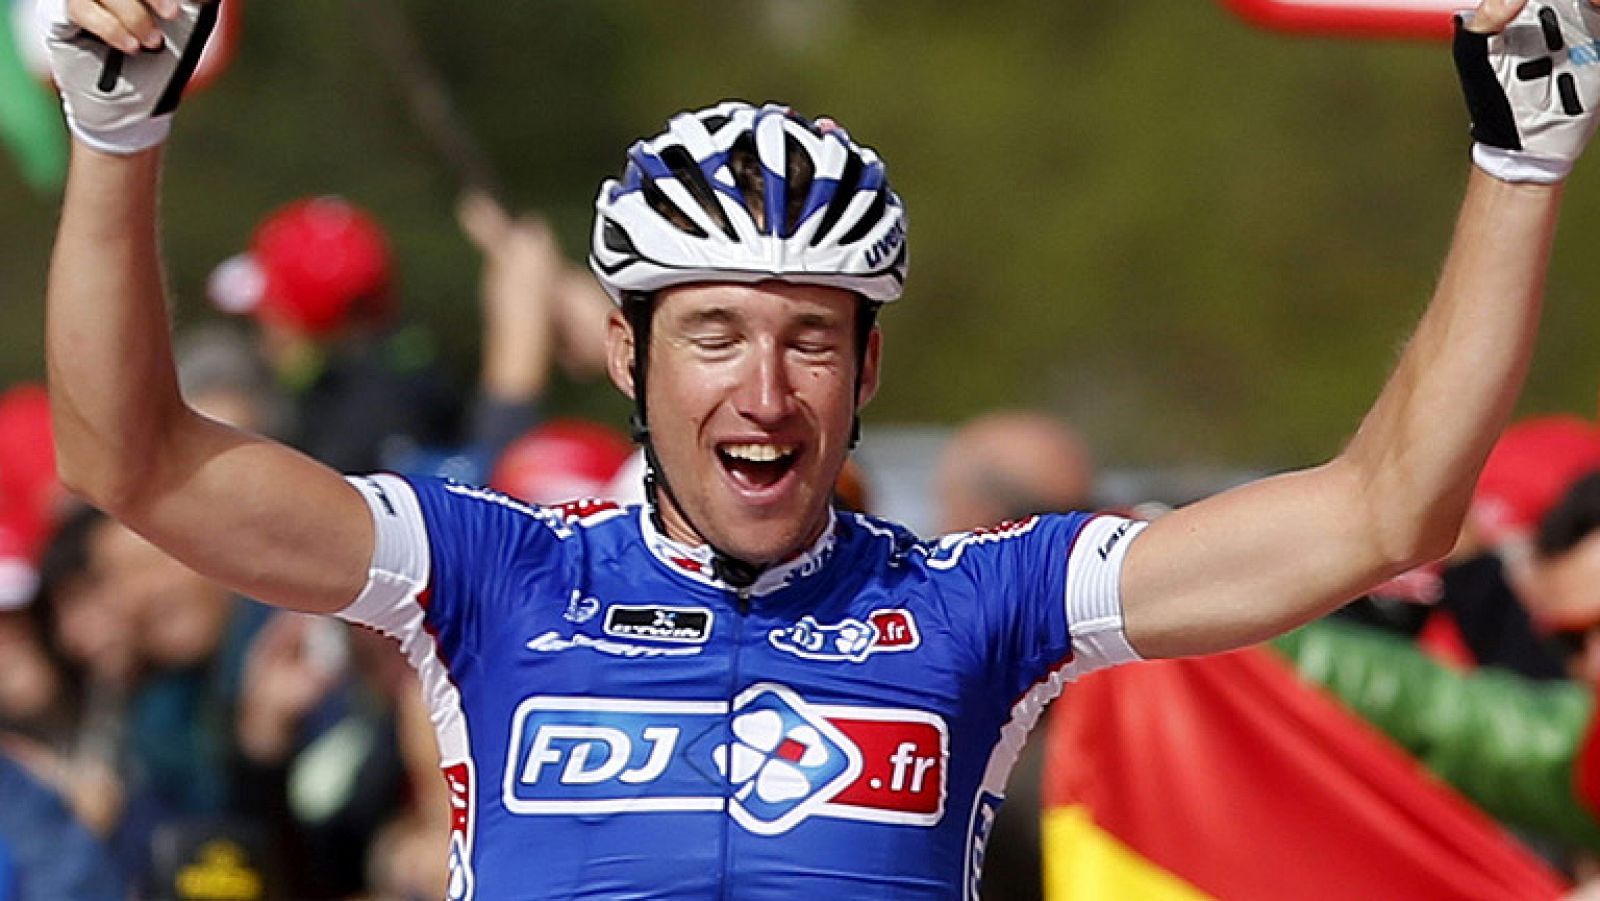 El francés Geniez ha ganado la etapa reina de la Vuelta a España 2013, con final en Peyragudes, en homenaje al Tour de Francia.